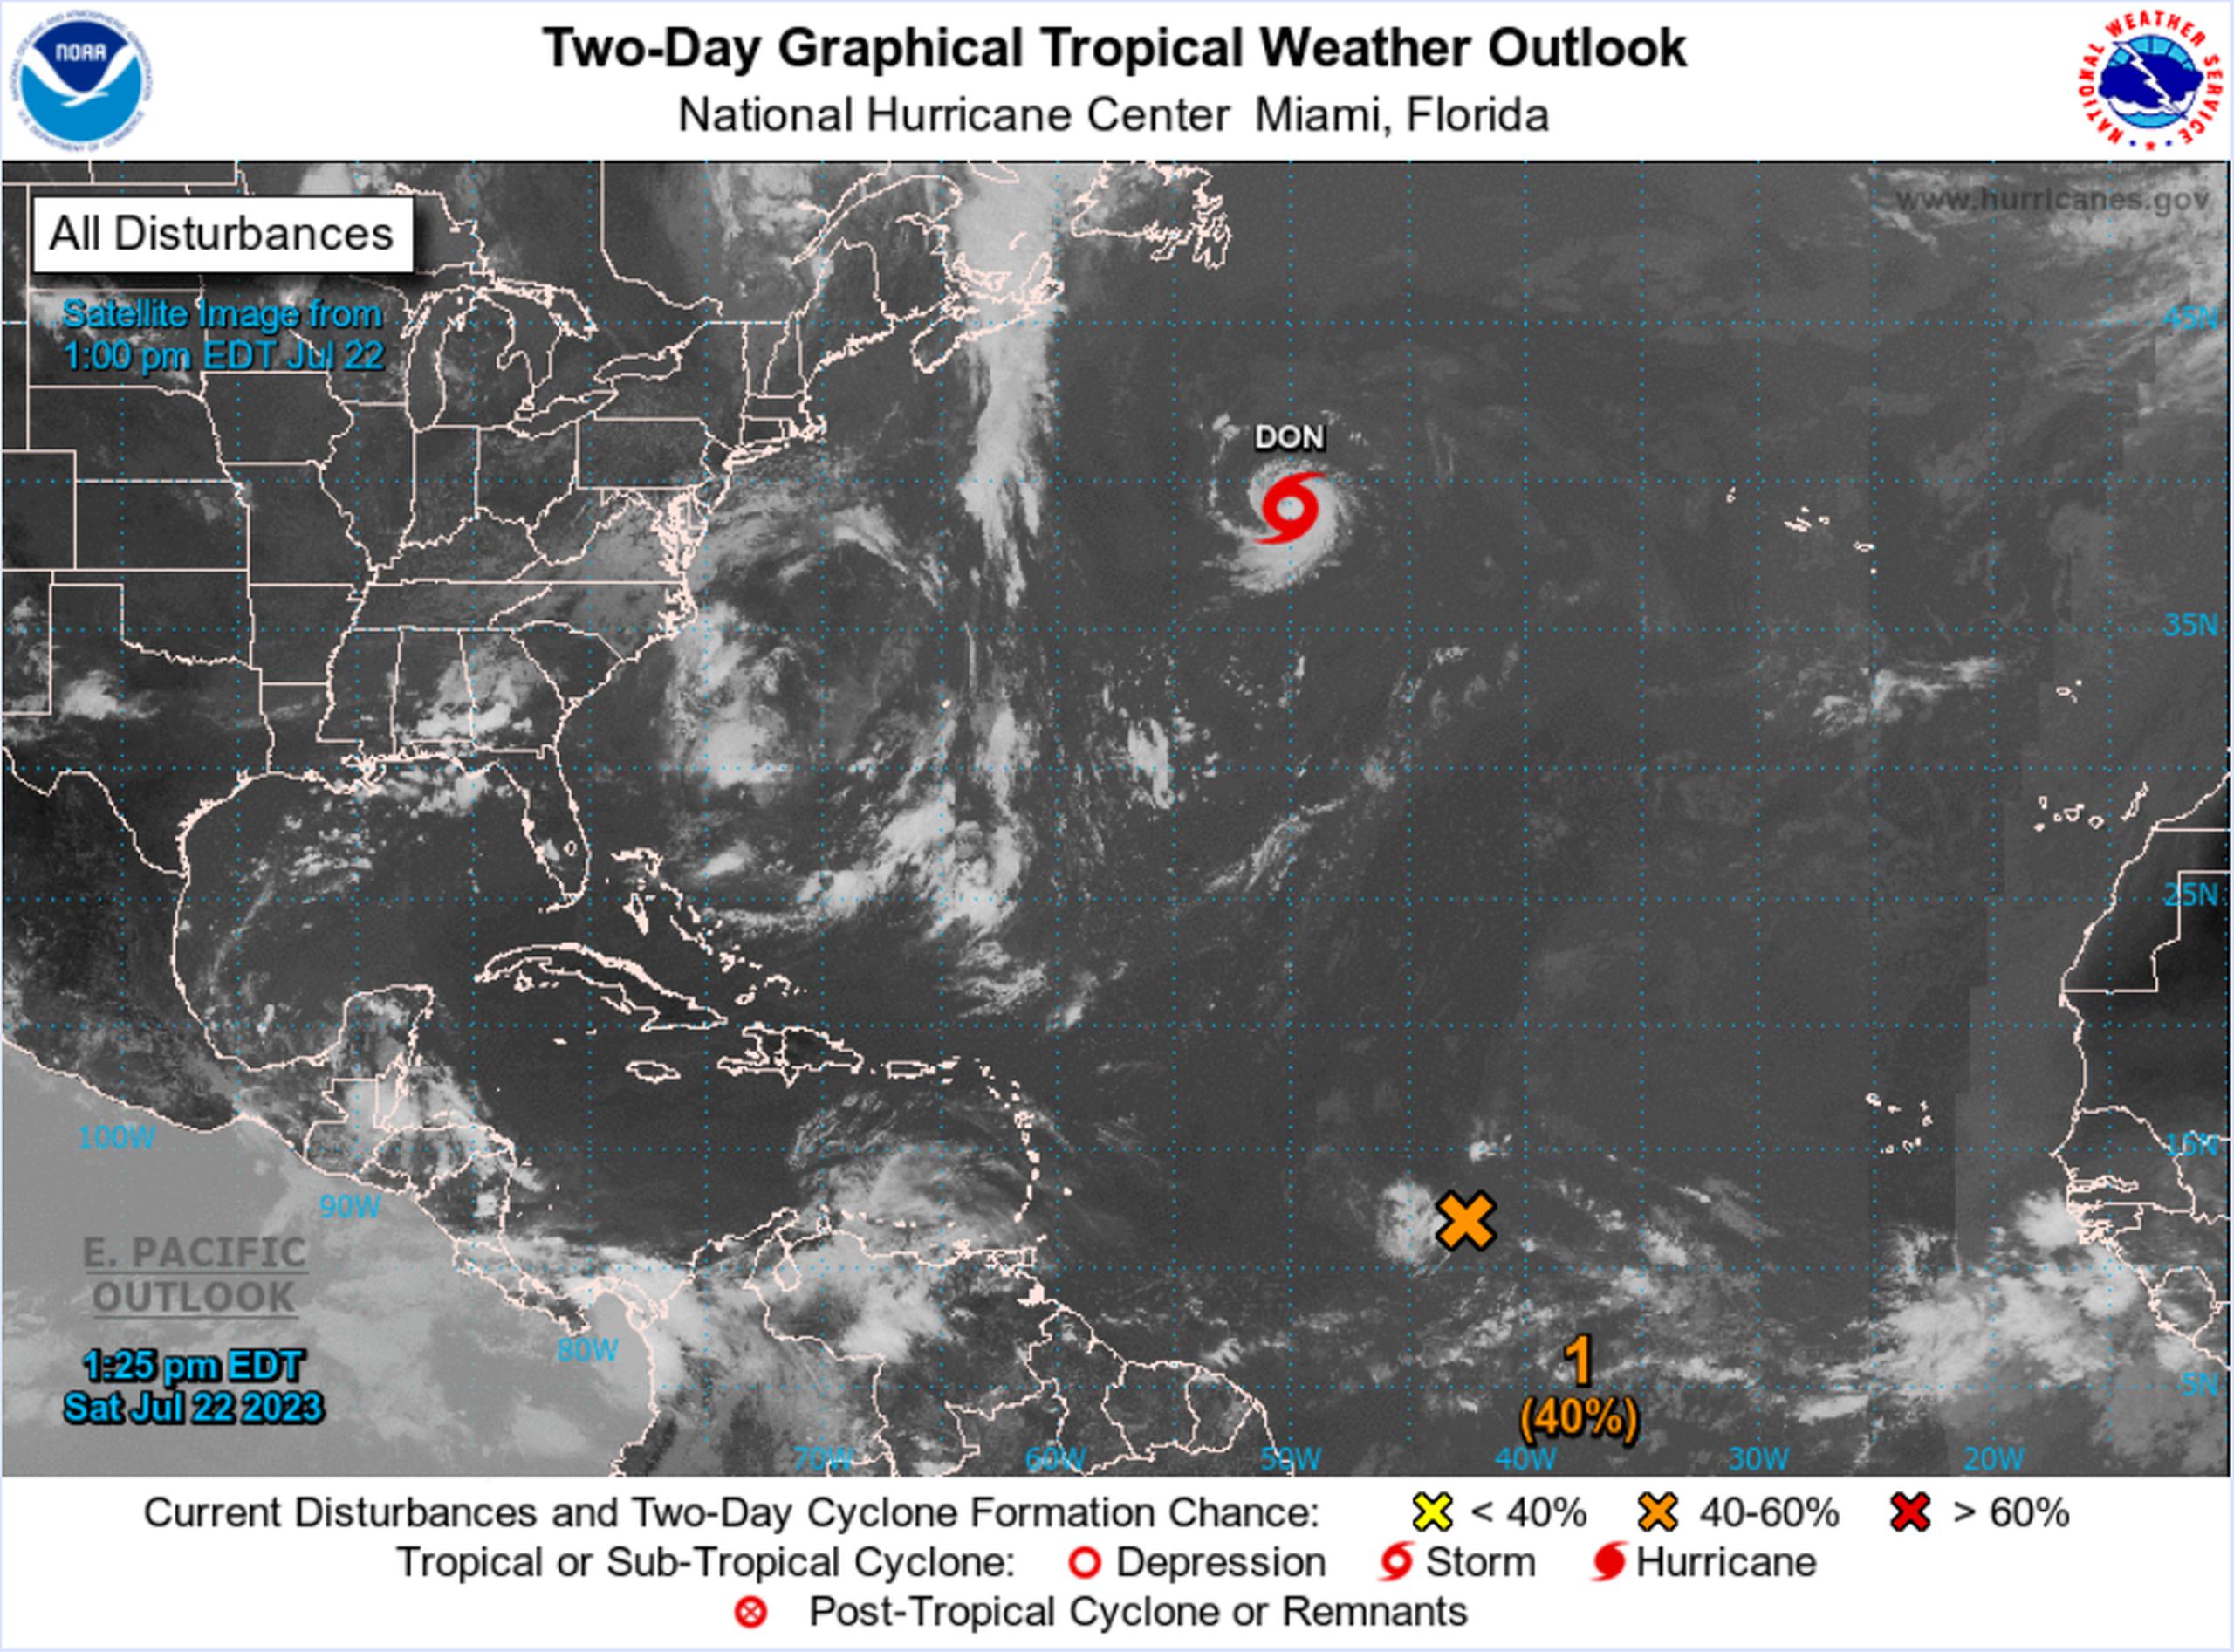 Dentro de las próximas 48 horas, la onda tropical sobre las aguas del Atlántico tiene una probabilidad de desarrollo ciclónico de 40%.